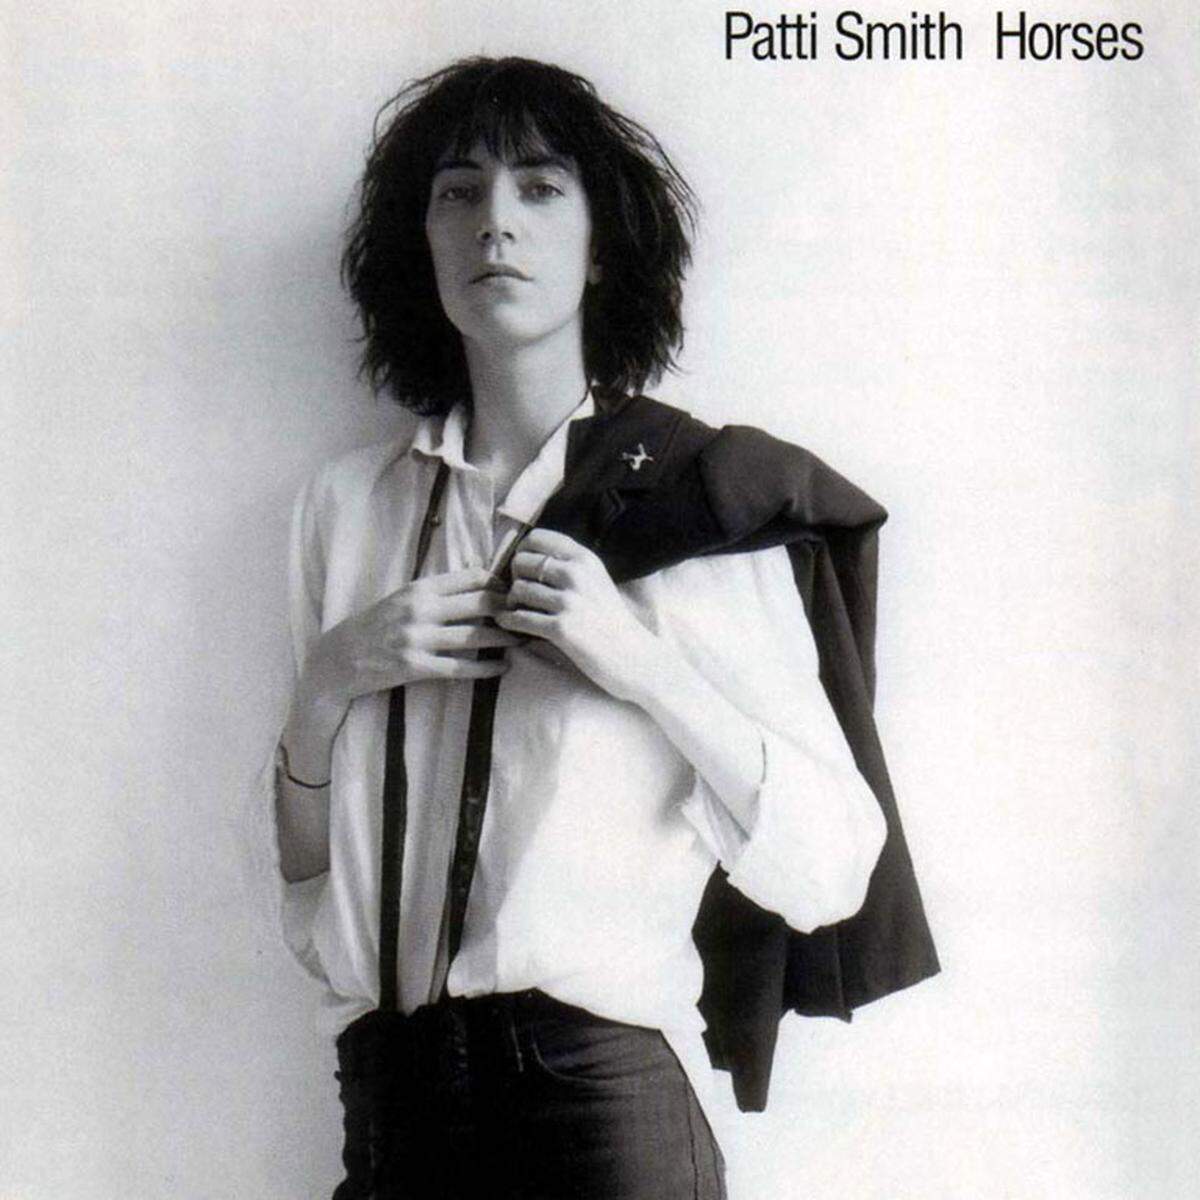 Michael Stipe und Morrissey schwärmen von "Horses" (1975), dem Debütalbum von Patti Smith. Zurecht.